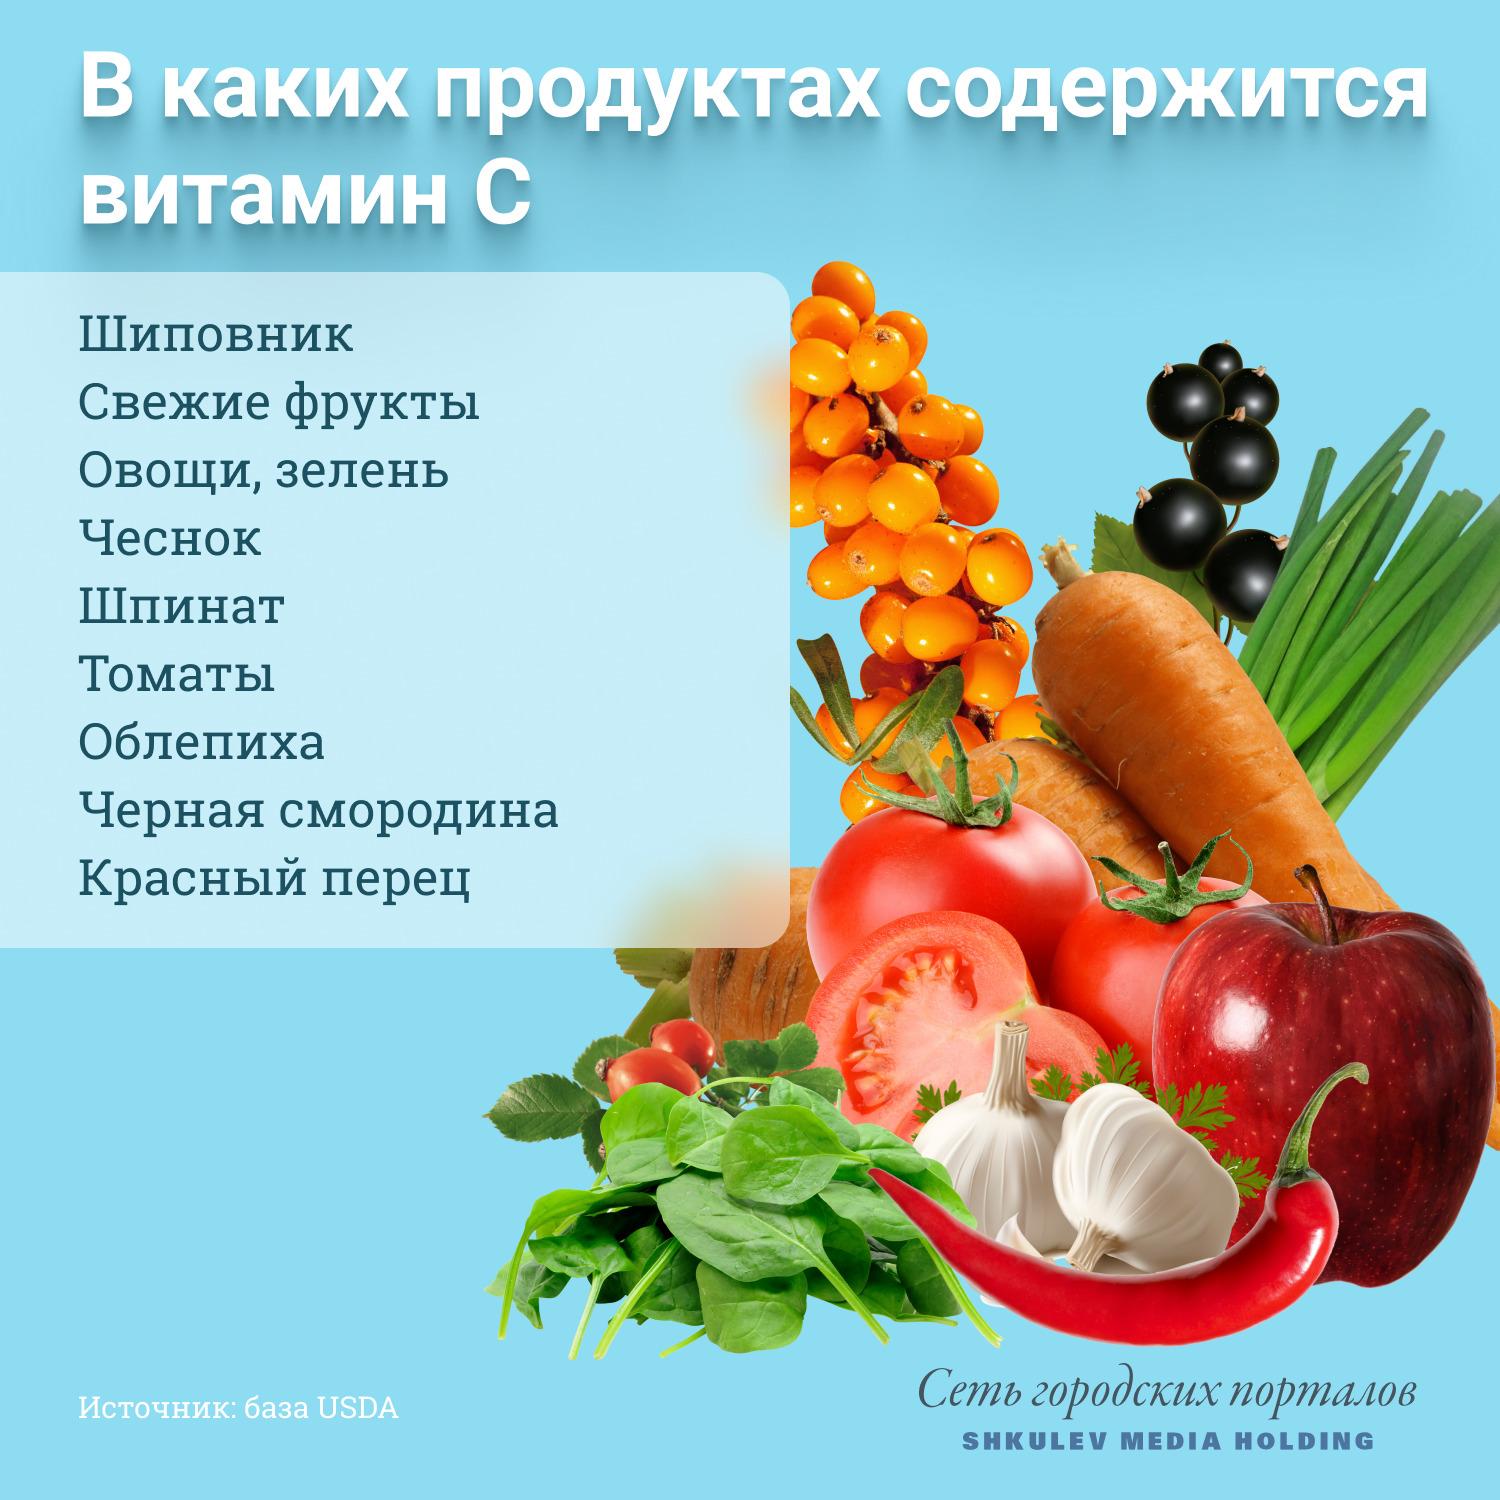 Какие фрукты и овощи содержат витамин B?